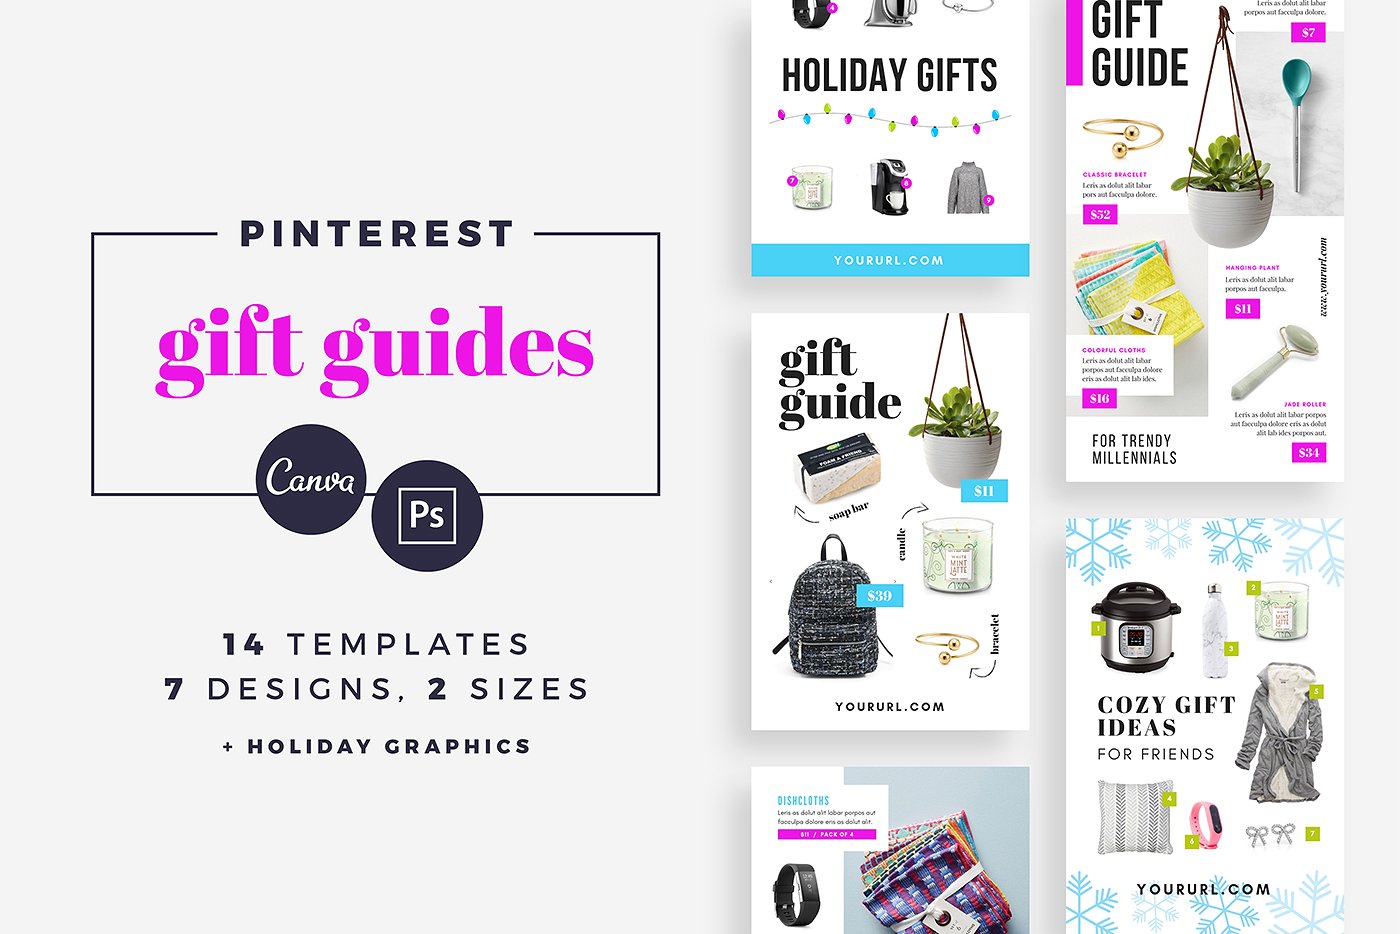 礼品指南社交媒体模板非凡图库精选 Gift Guide Pinterest Templates [psd]插图